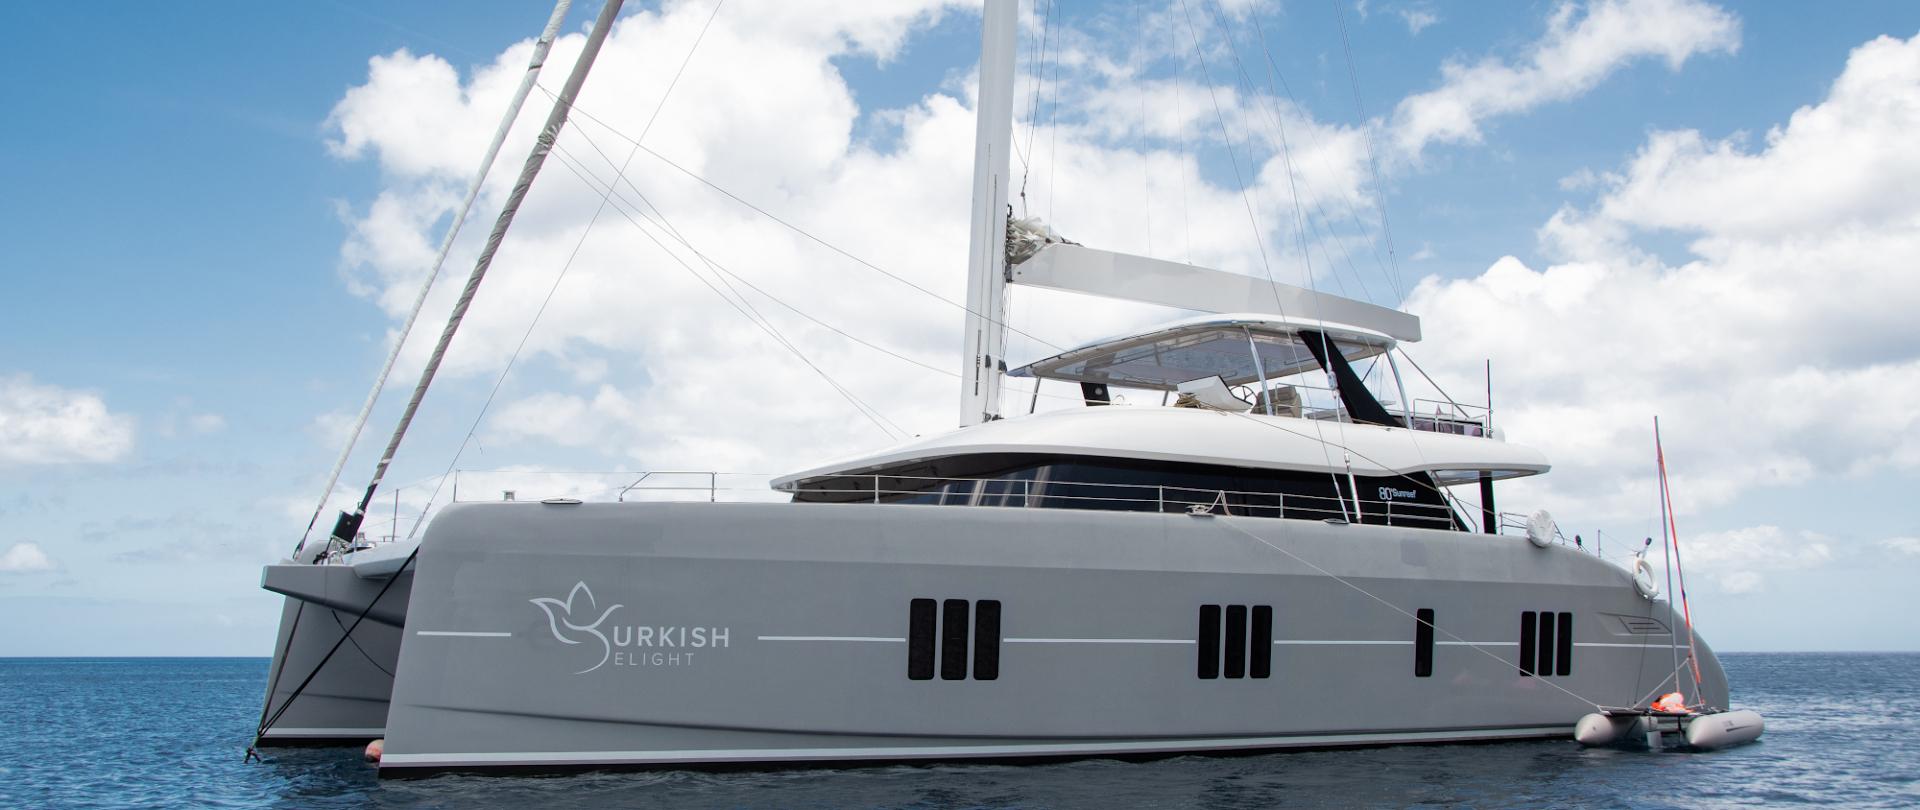 Luxury yacht TURKISH DELIGHT